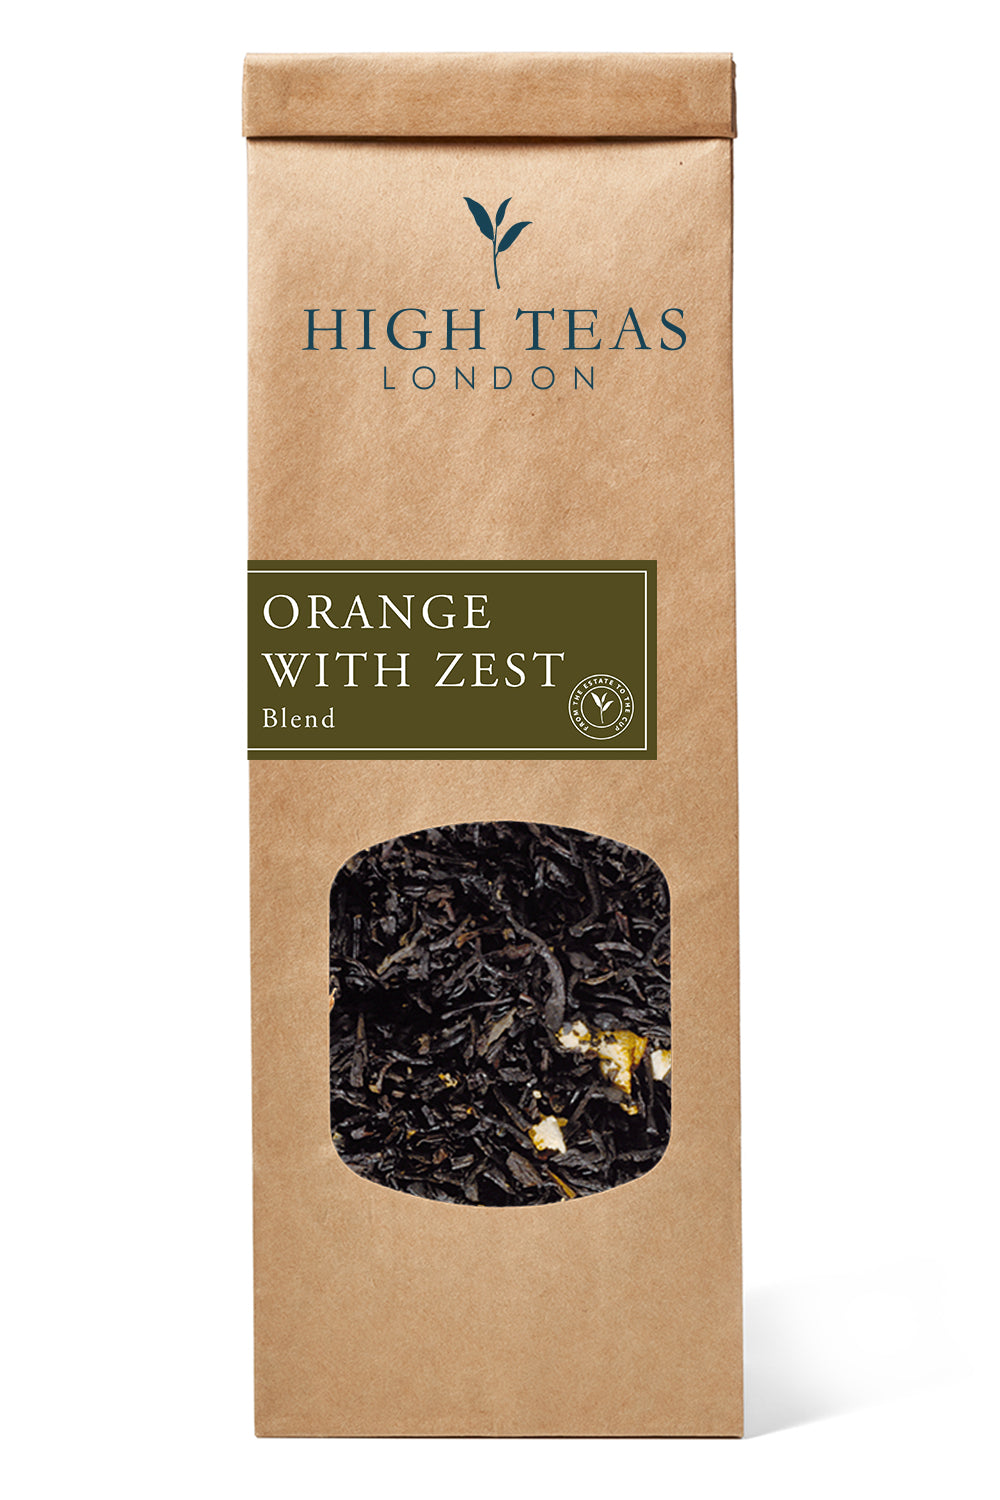 Orange with zests-50g-Loose Leaf Tea-High Teas